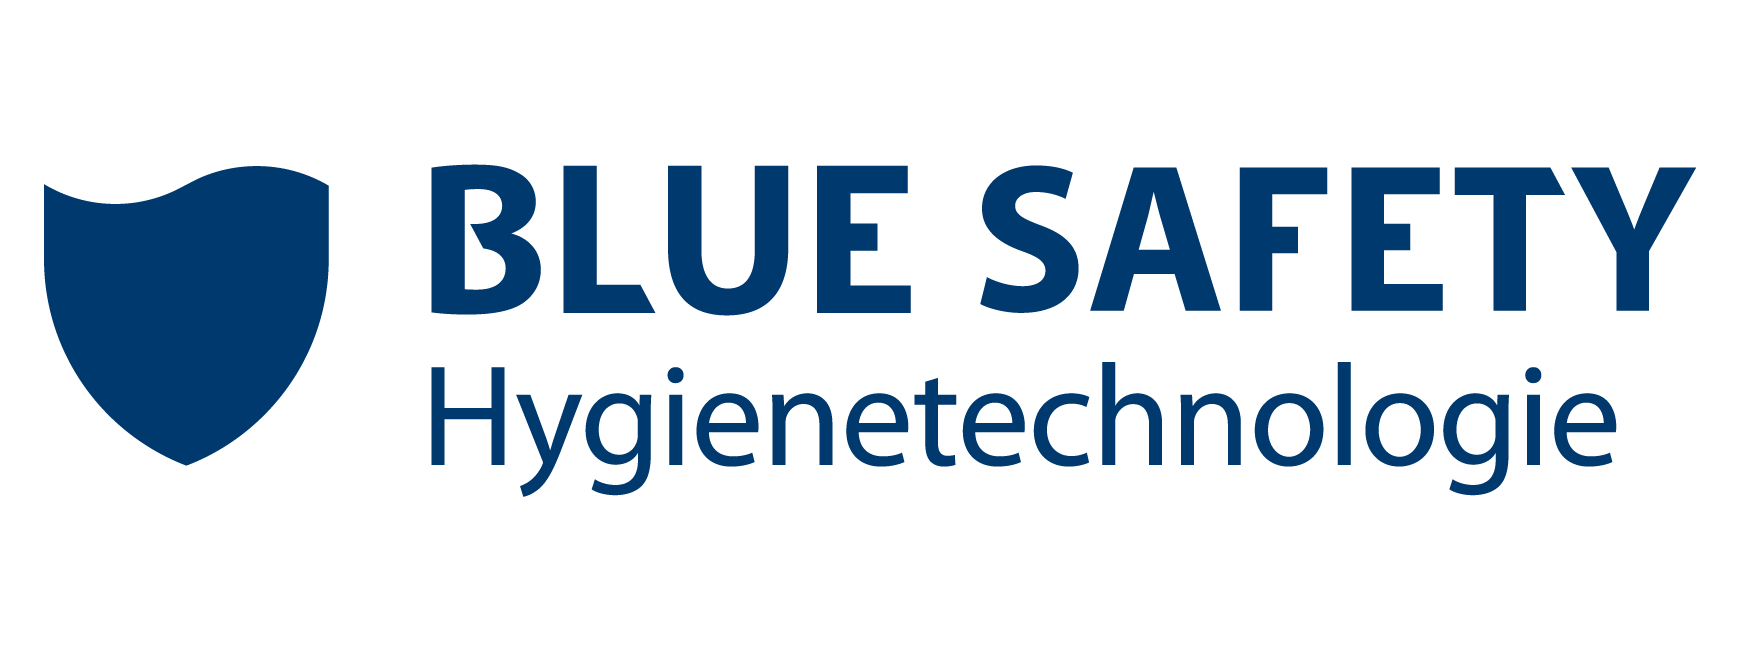 Blue Safety Hygienetechnologie GmbH